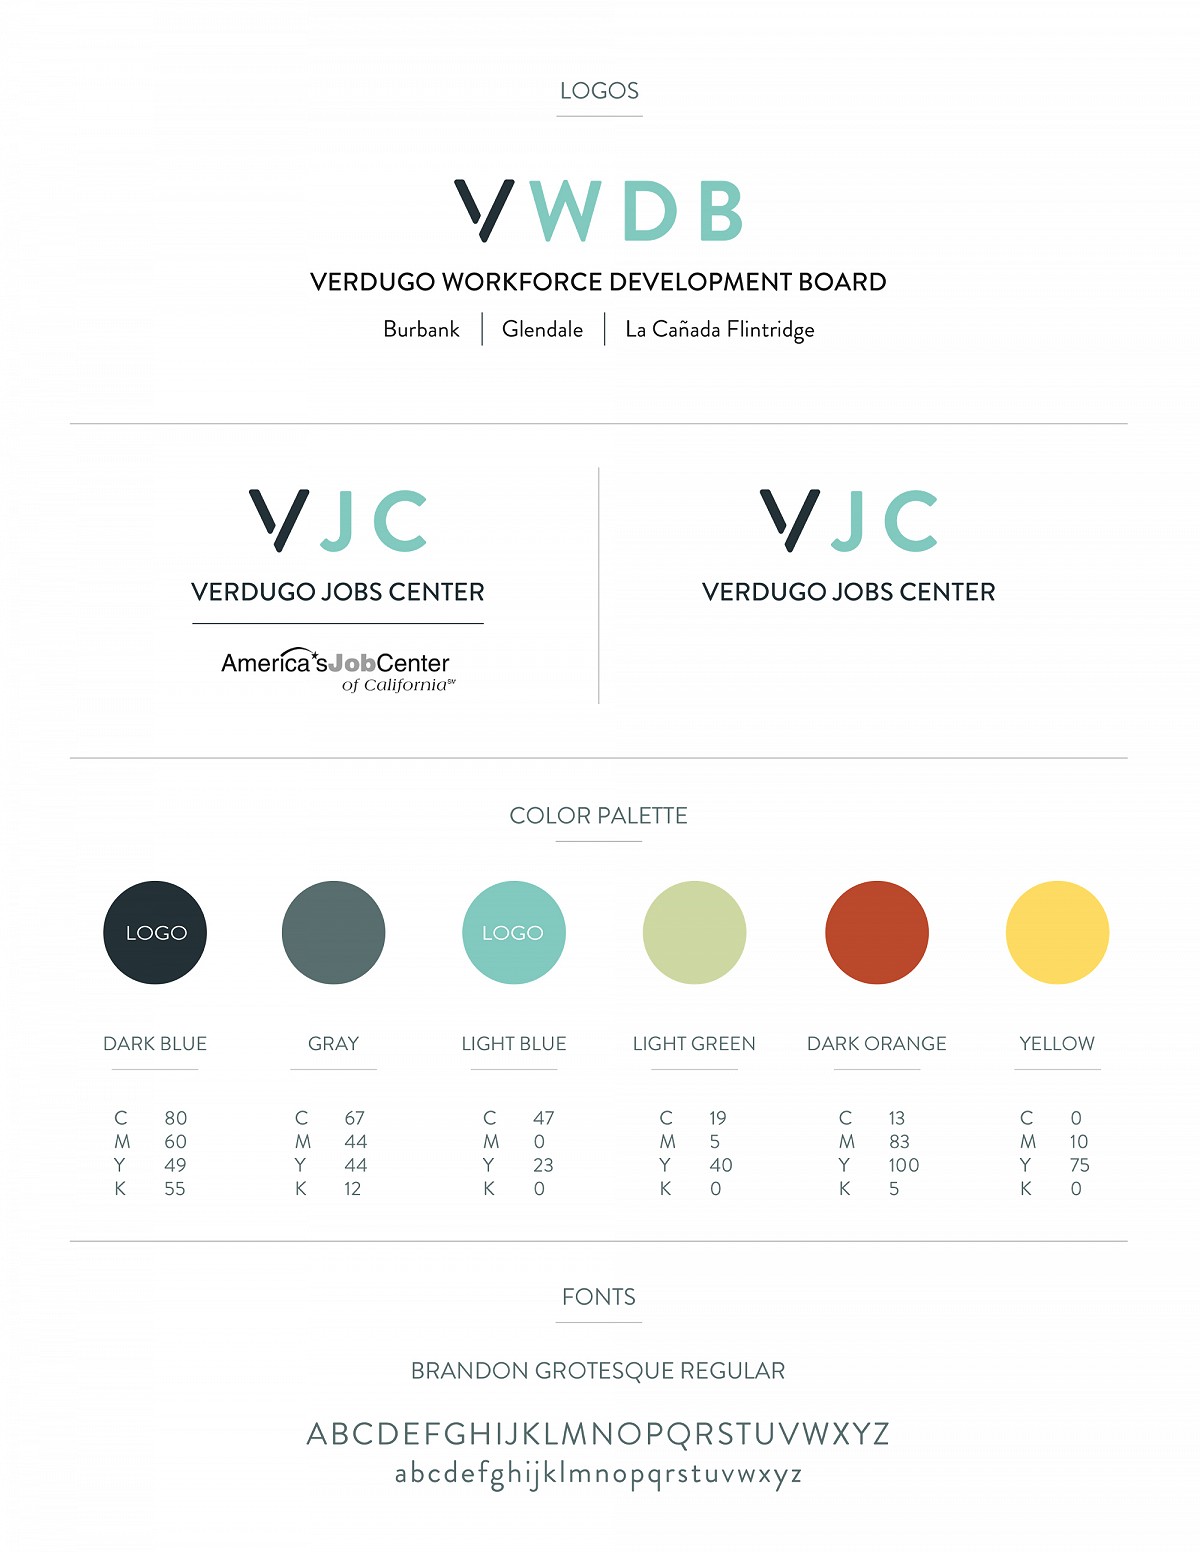 VWDB Style Guide